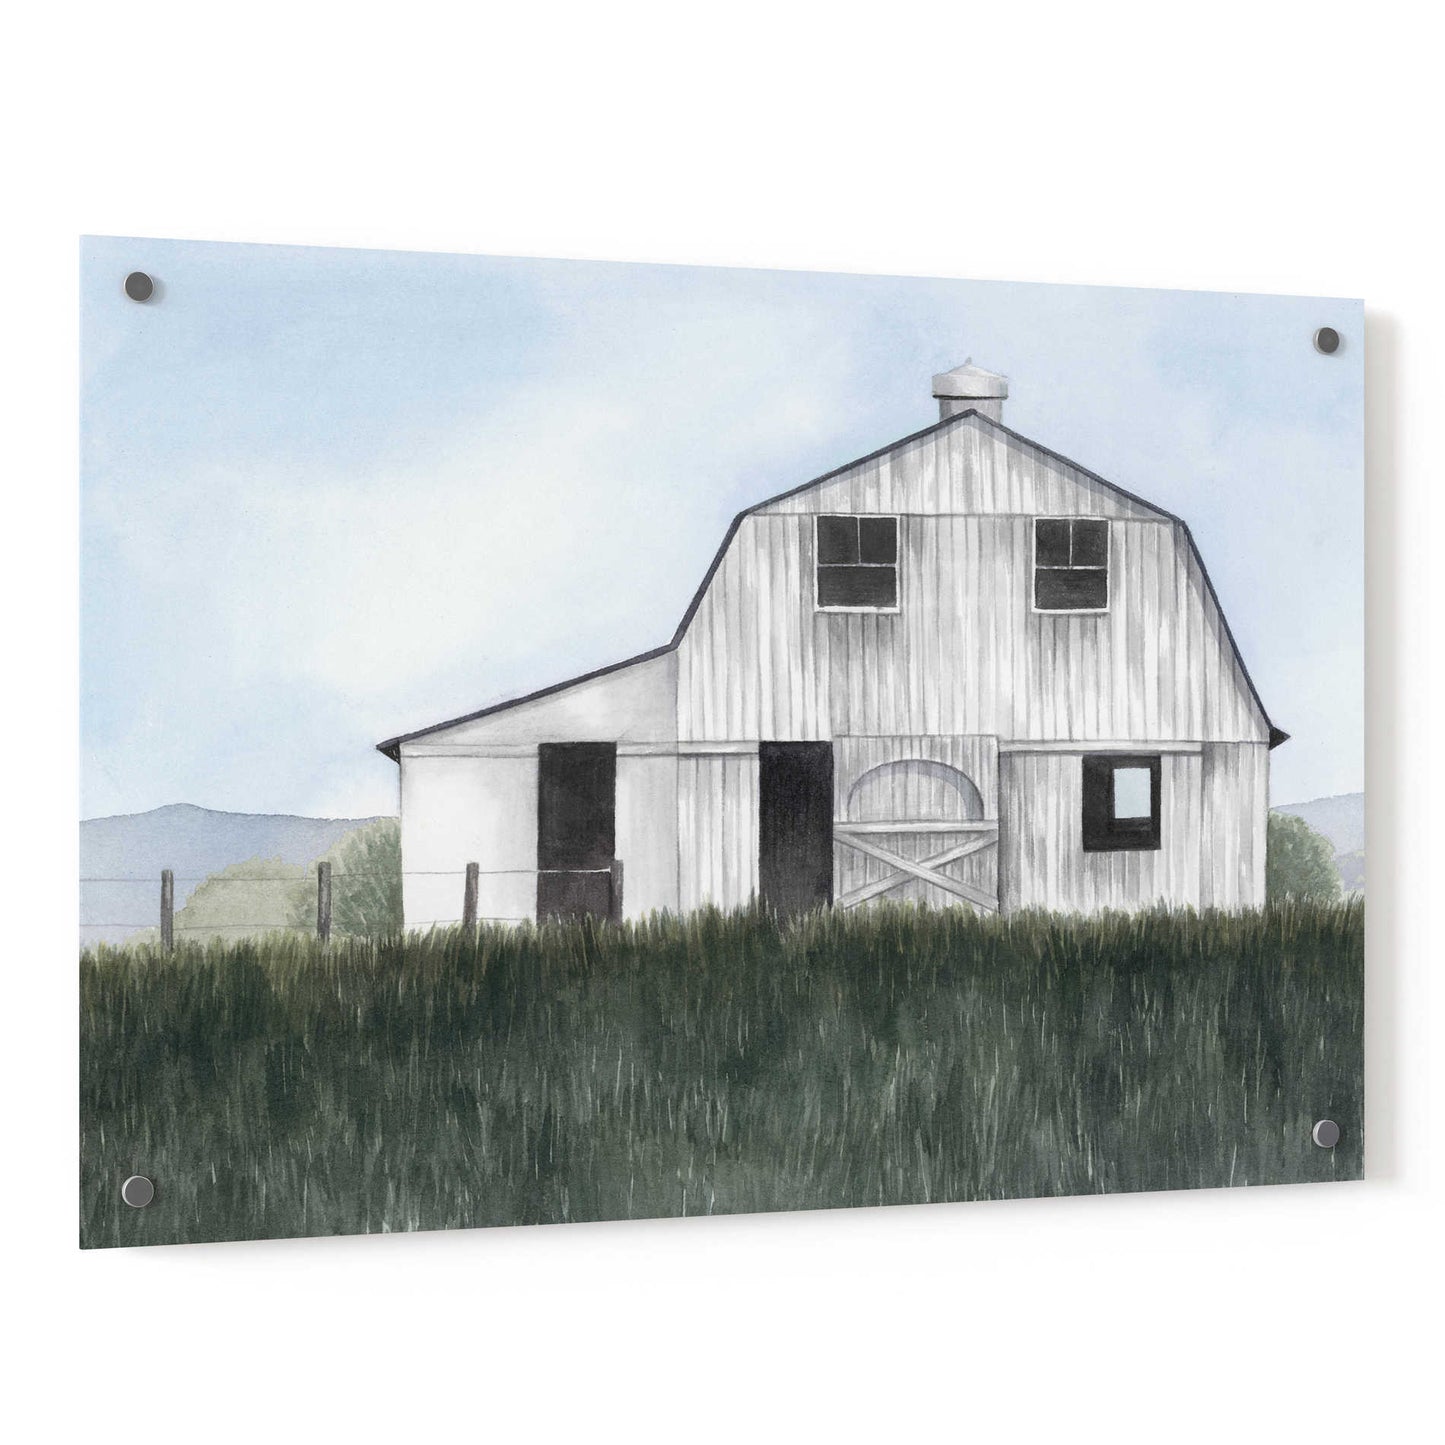 Epic Art 'Bygone Barn II' by Grace Popp, Acrylic Wall Glass,36x24